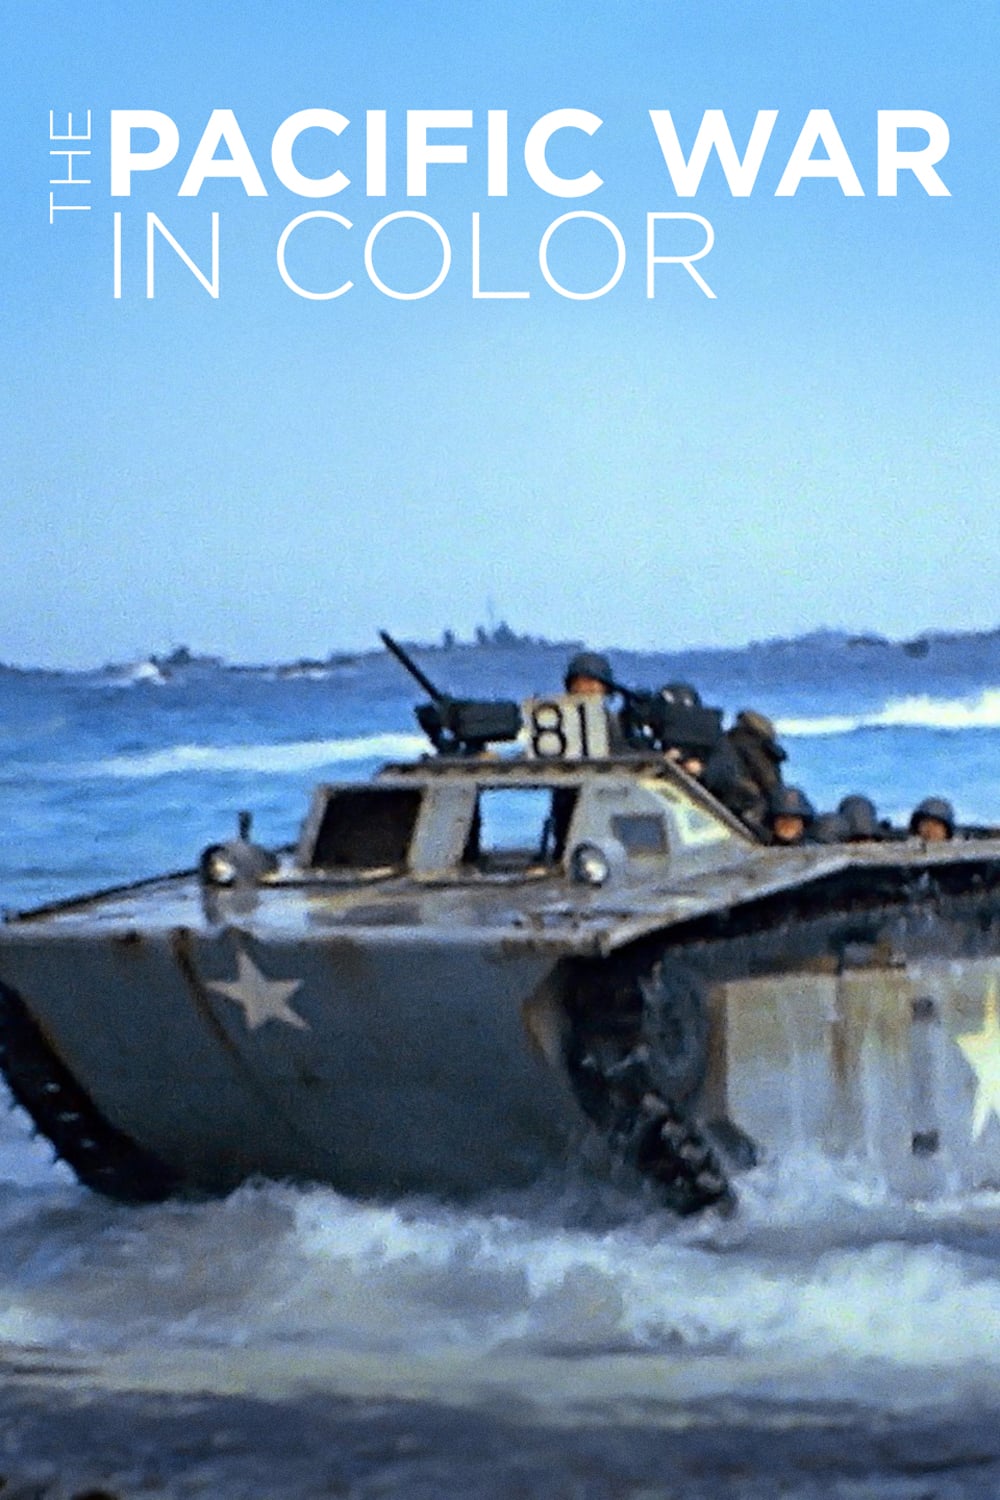 La Guerra del Pacifico en color